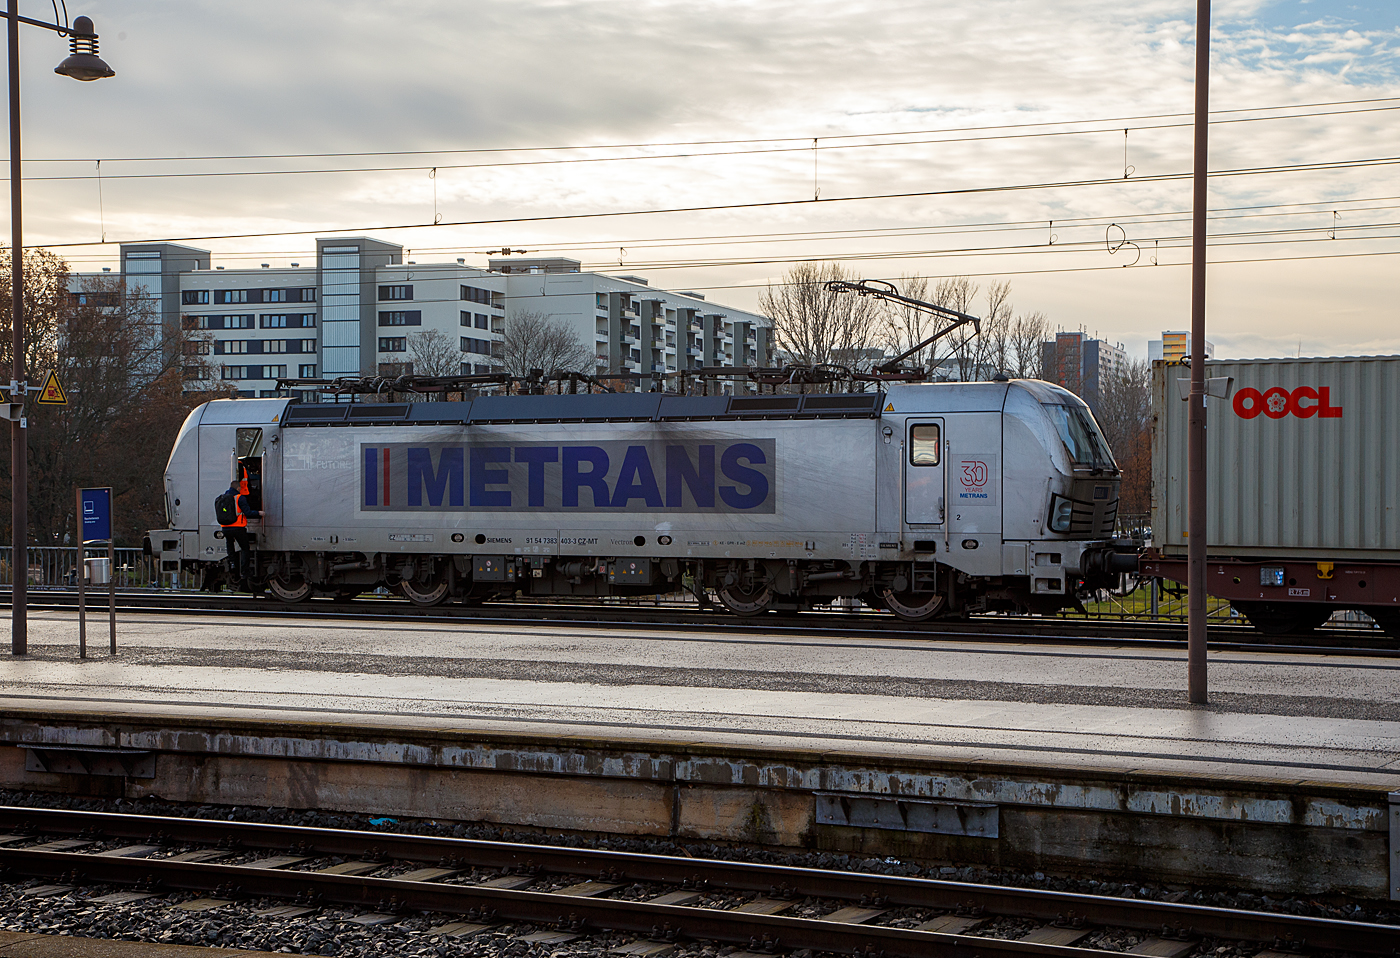 Die 383 403-3 (91 54 7383 403-3 CZ-MT), eine Siemens Vectron MS der METRANS Rail s.r.o. (Prag / Praha), am 08.12.2022 mit einem Containerzug im Hauptbahnhof Dresden, hier wechseln gerade die Lokführer/-in bevor es in Richtung Tschechien weiter geht. Die METRANS gibt es schon über 30 Jahren, sie ist ein 100 %-iges Tochterunternehmen der Hamburger Hafen und Logistik AG (HHLA).

Die Siemens Vectron MS (Vectron X4 A01) wurden 2019 von Siemens Mobilitiy in München-Allach unter der Fabriknummer 22693 gebaut und an die METRANS geliefert. Die Vectron MS in der Version A01hat die Zulassungen und Zugbeeinflussungssysteme für Tschechien, Deutschland, Österreich, Slowakei, Ungarn und Polen (CZ, D, A, SK, H, PL). Die neuen Lokomotiven für Metrans erreichen eine Höchstleistung von 6,4 MW und eine Spitzengeschwindigkeit von 160 km/h. 

Zukünftige Aufrüstungen für den Einsatz in Bulgarien, Kroatien, den Niederlanden, Rumänien, Serbien und Slowenien sind möglich.